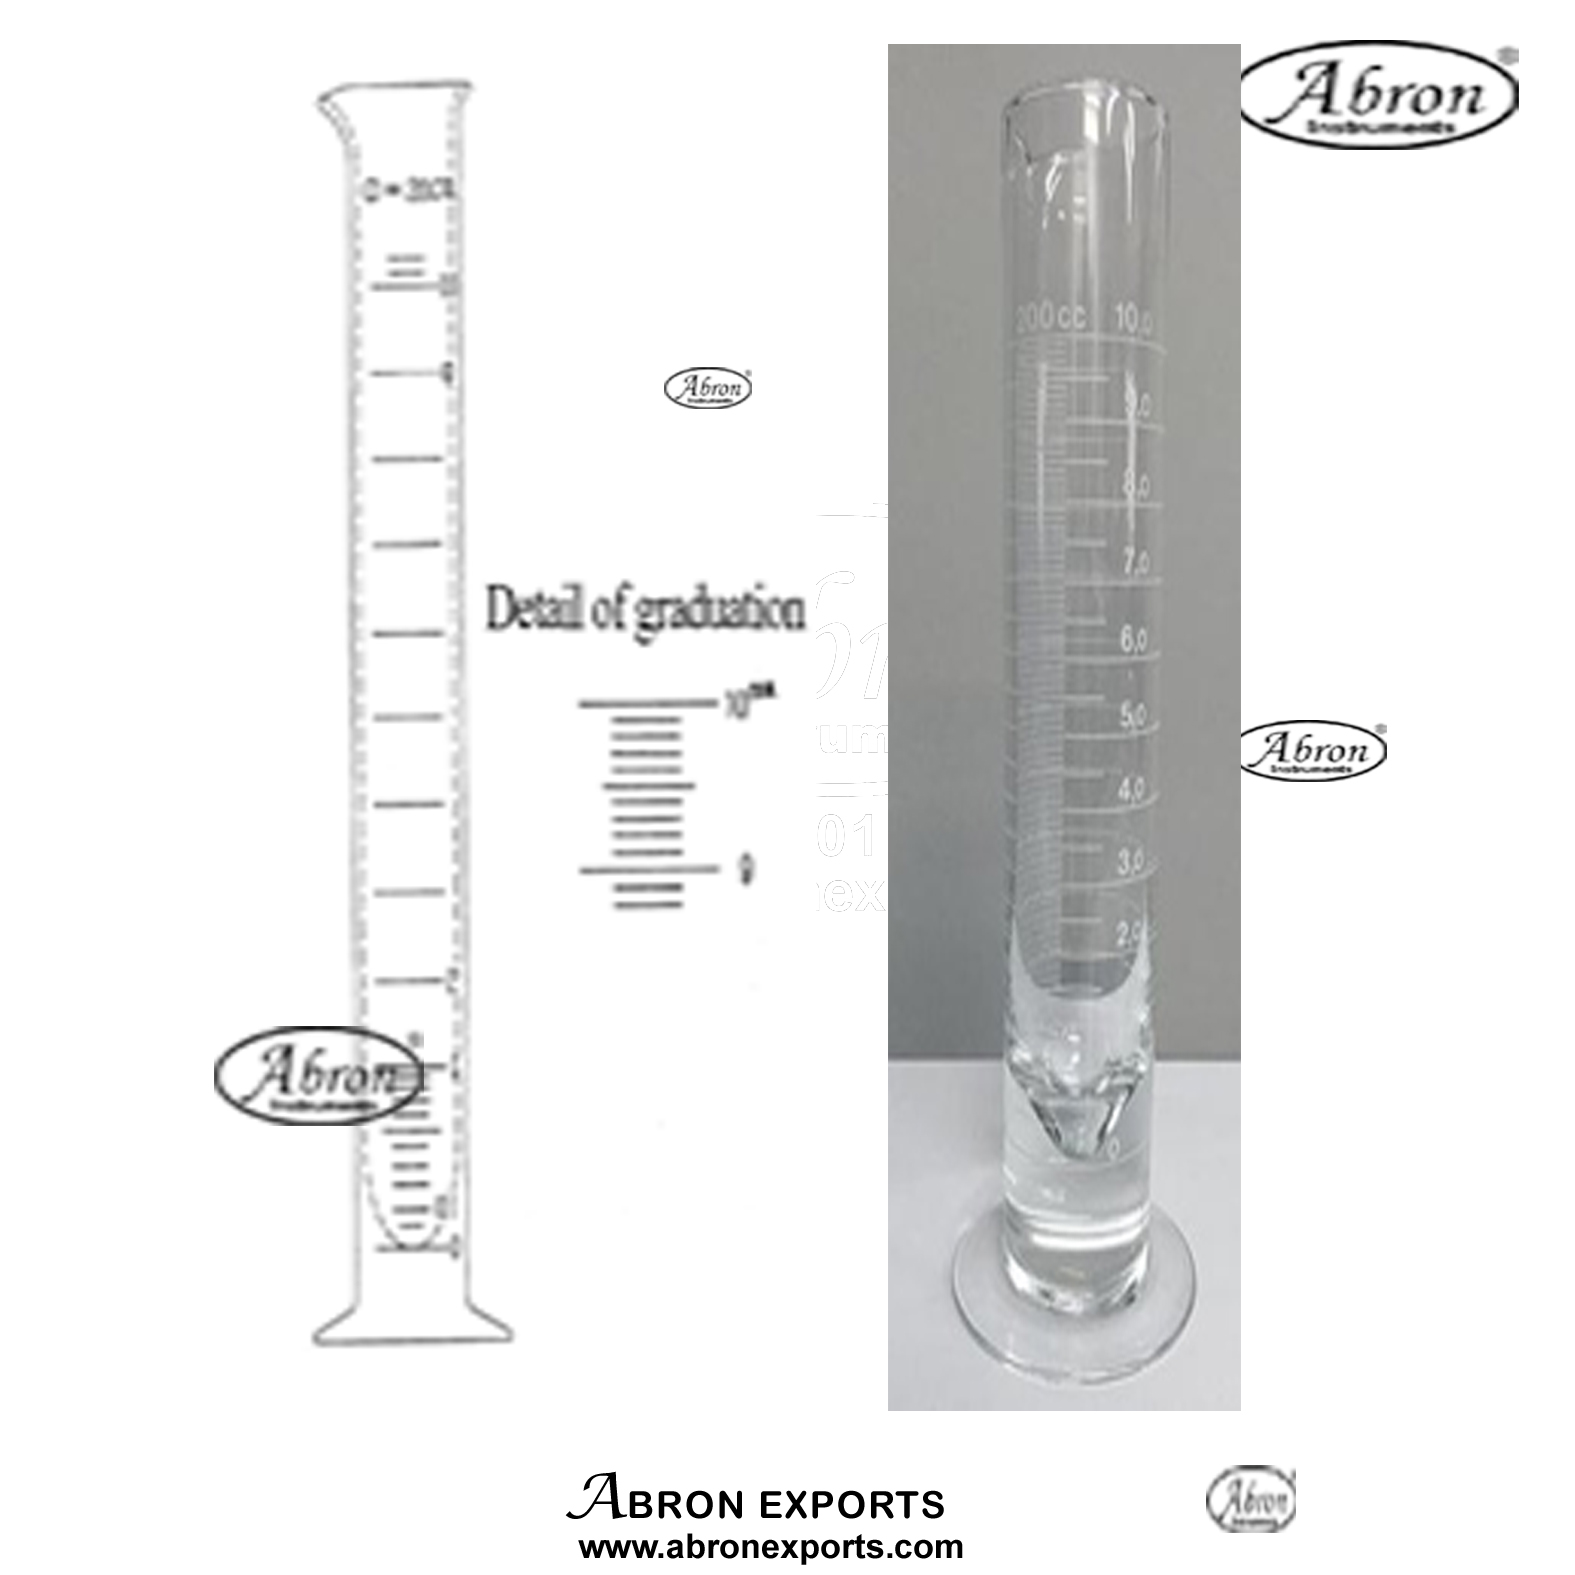 Rain guage cylinder glass diagram size AM-118CY